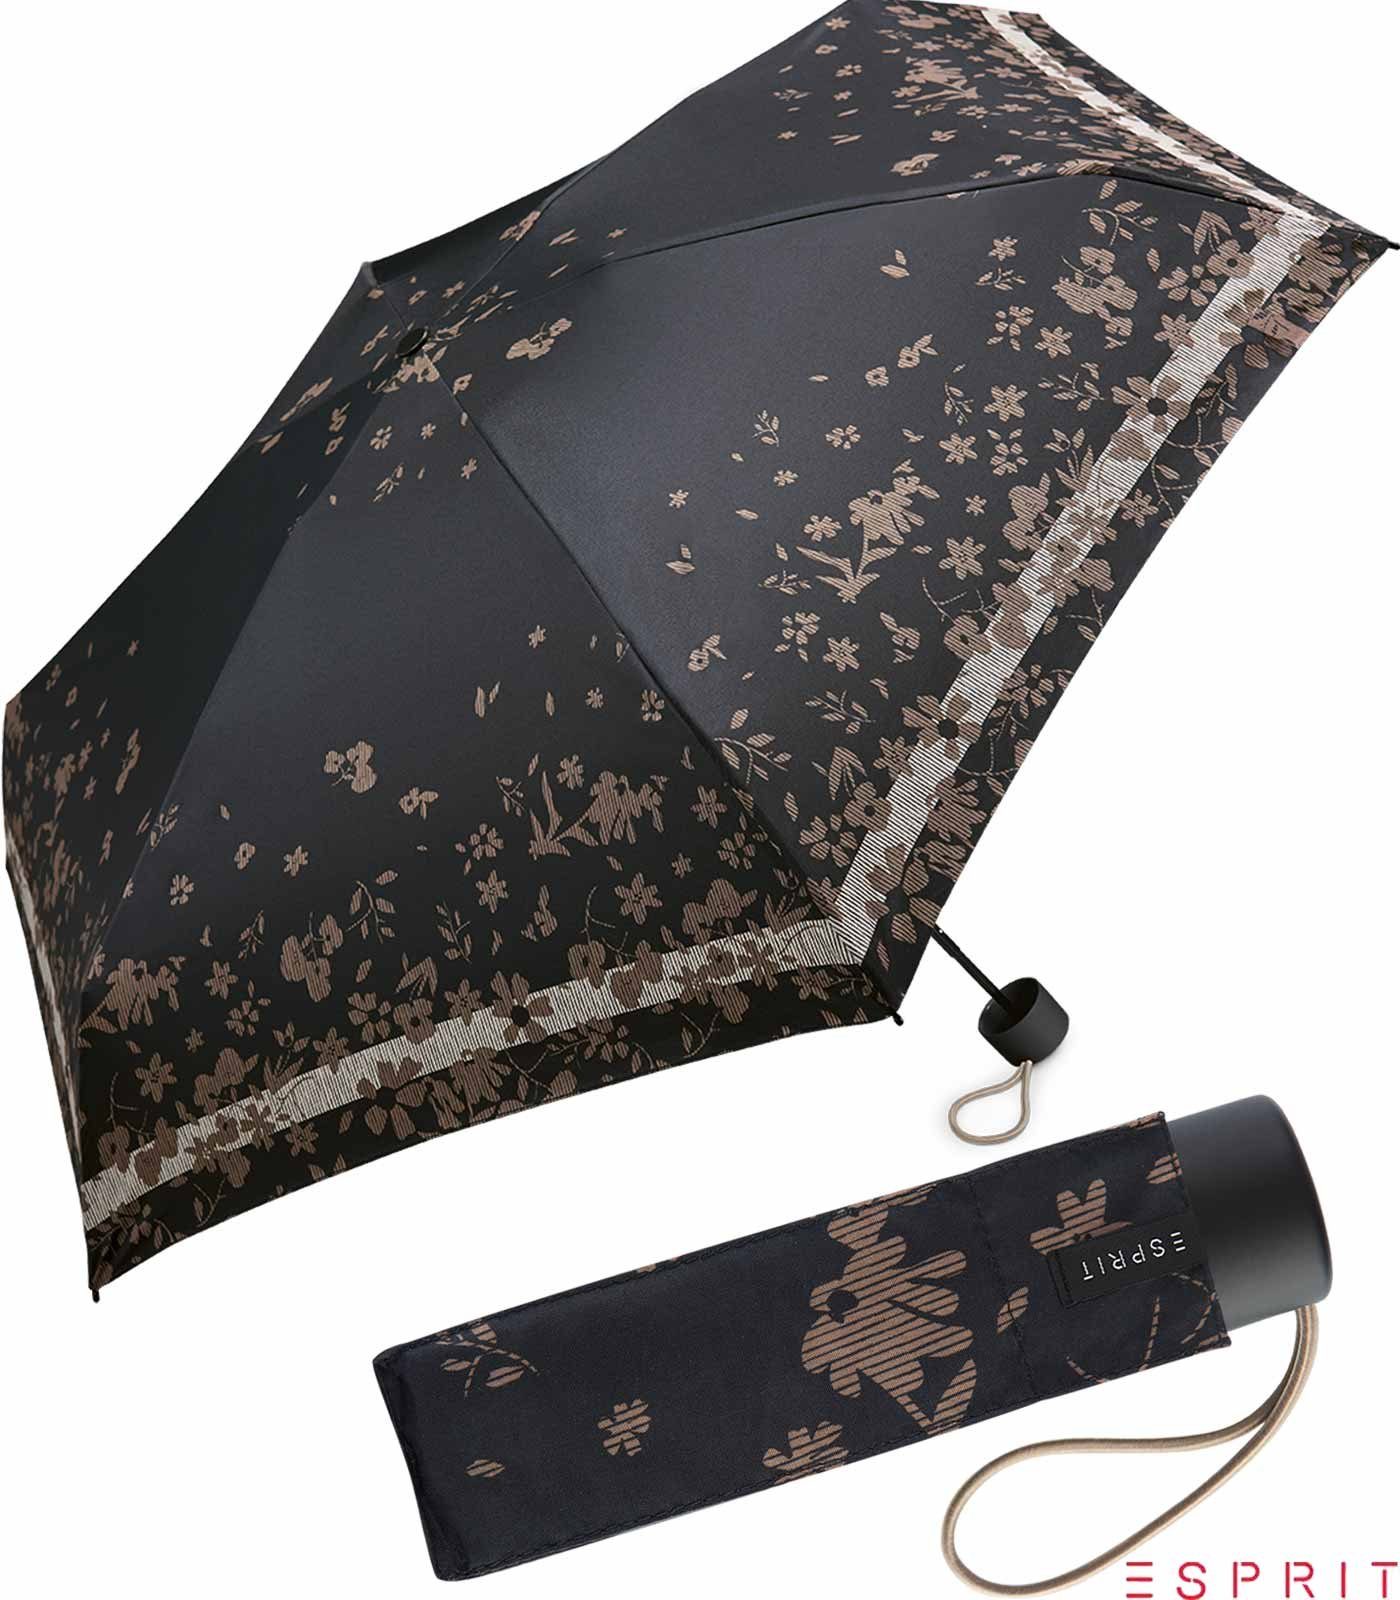 Damen Taschenregenschirm - black, Blumenmuster Esprit winzig Mini Petito Flower mit klein, Super Regenschirm schwarz Poetry